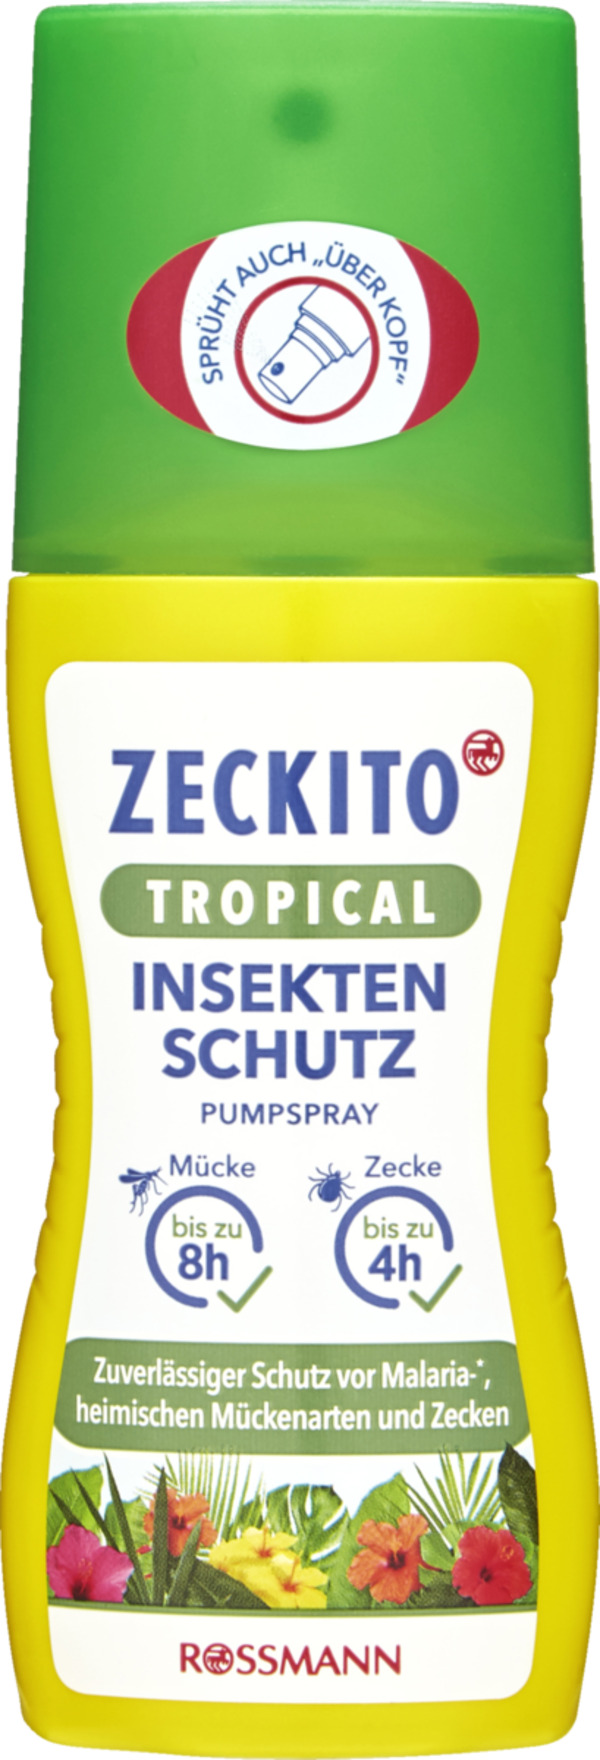 Bild 1 von Zeckito Tropical Insektenschutz Pumpspray